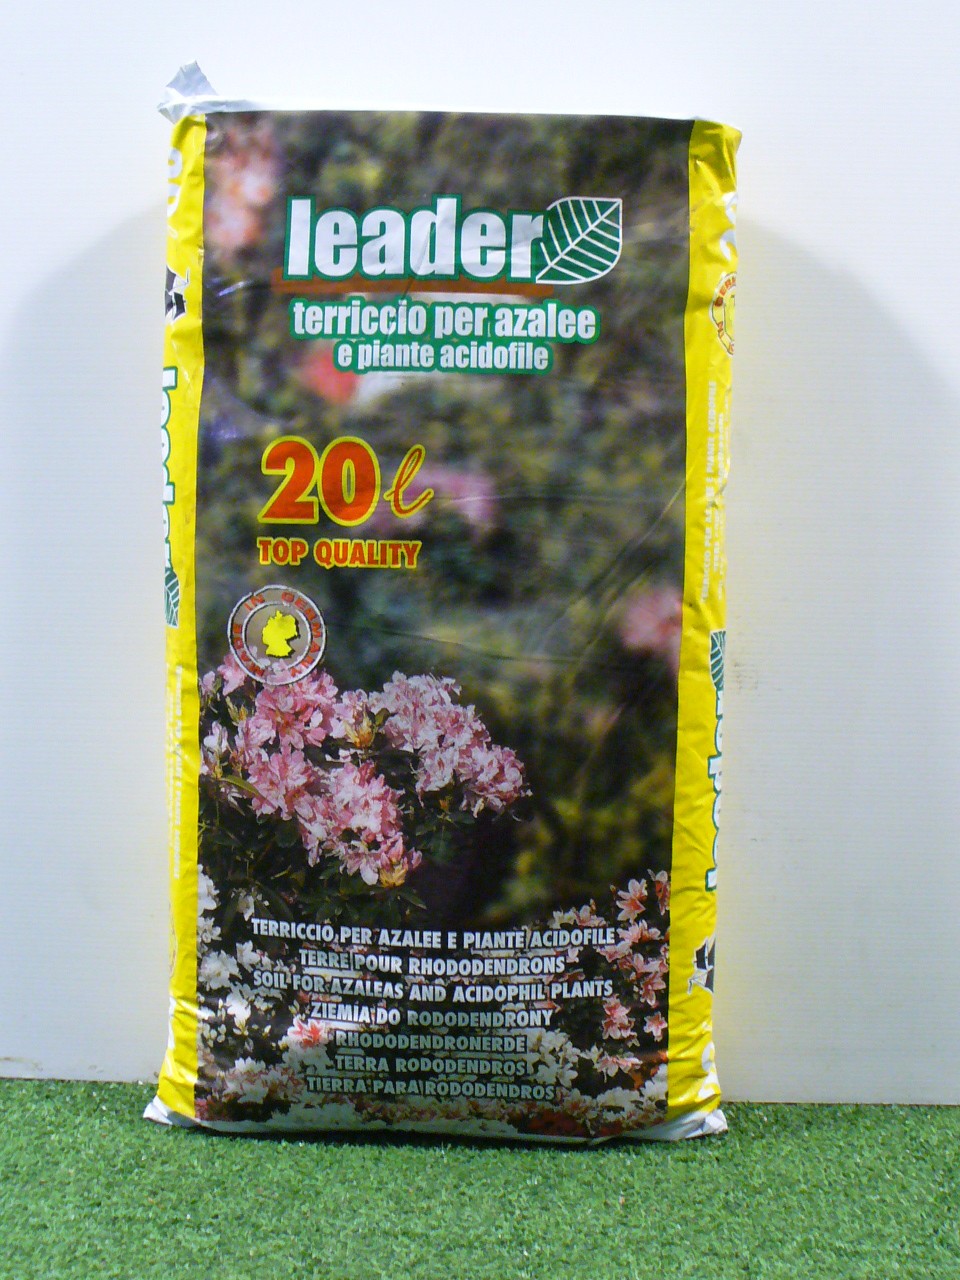 Substrato Leader  piante acidofile 20 Lt.